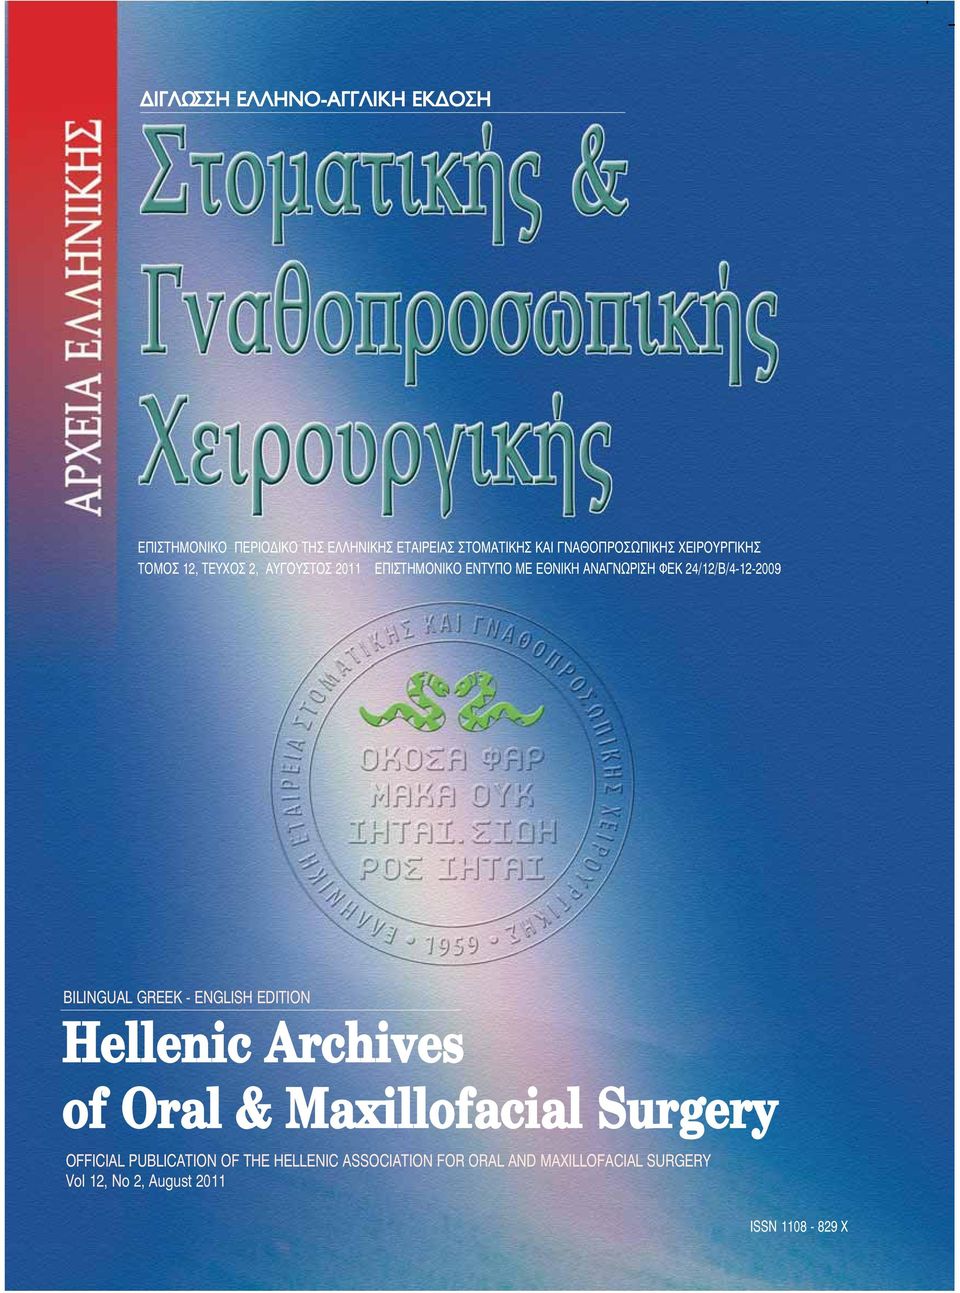 ΦΕΚ 24/12/Β/4-12-29 ΒILINGUAL GREEK - ENGLISH EDITION Hellenic Archives of Oral & Maxillofacial Surgery